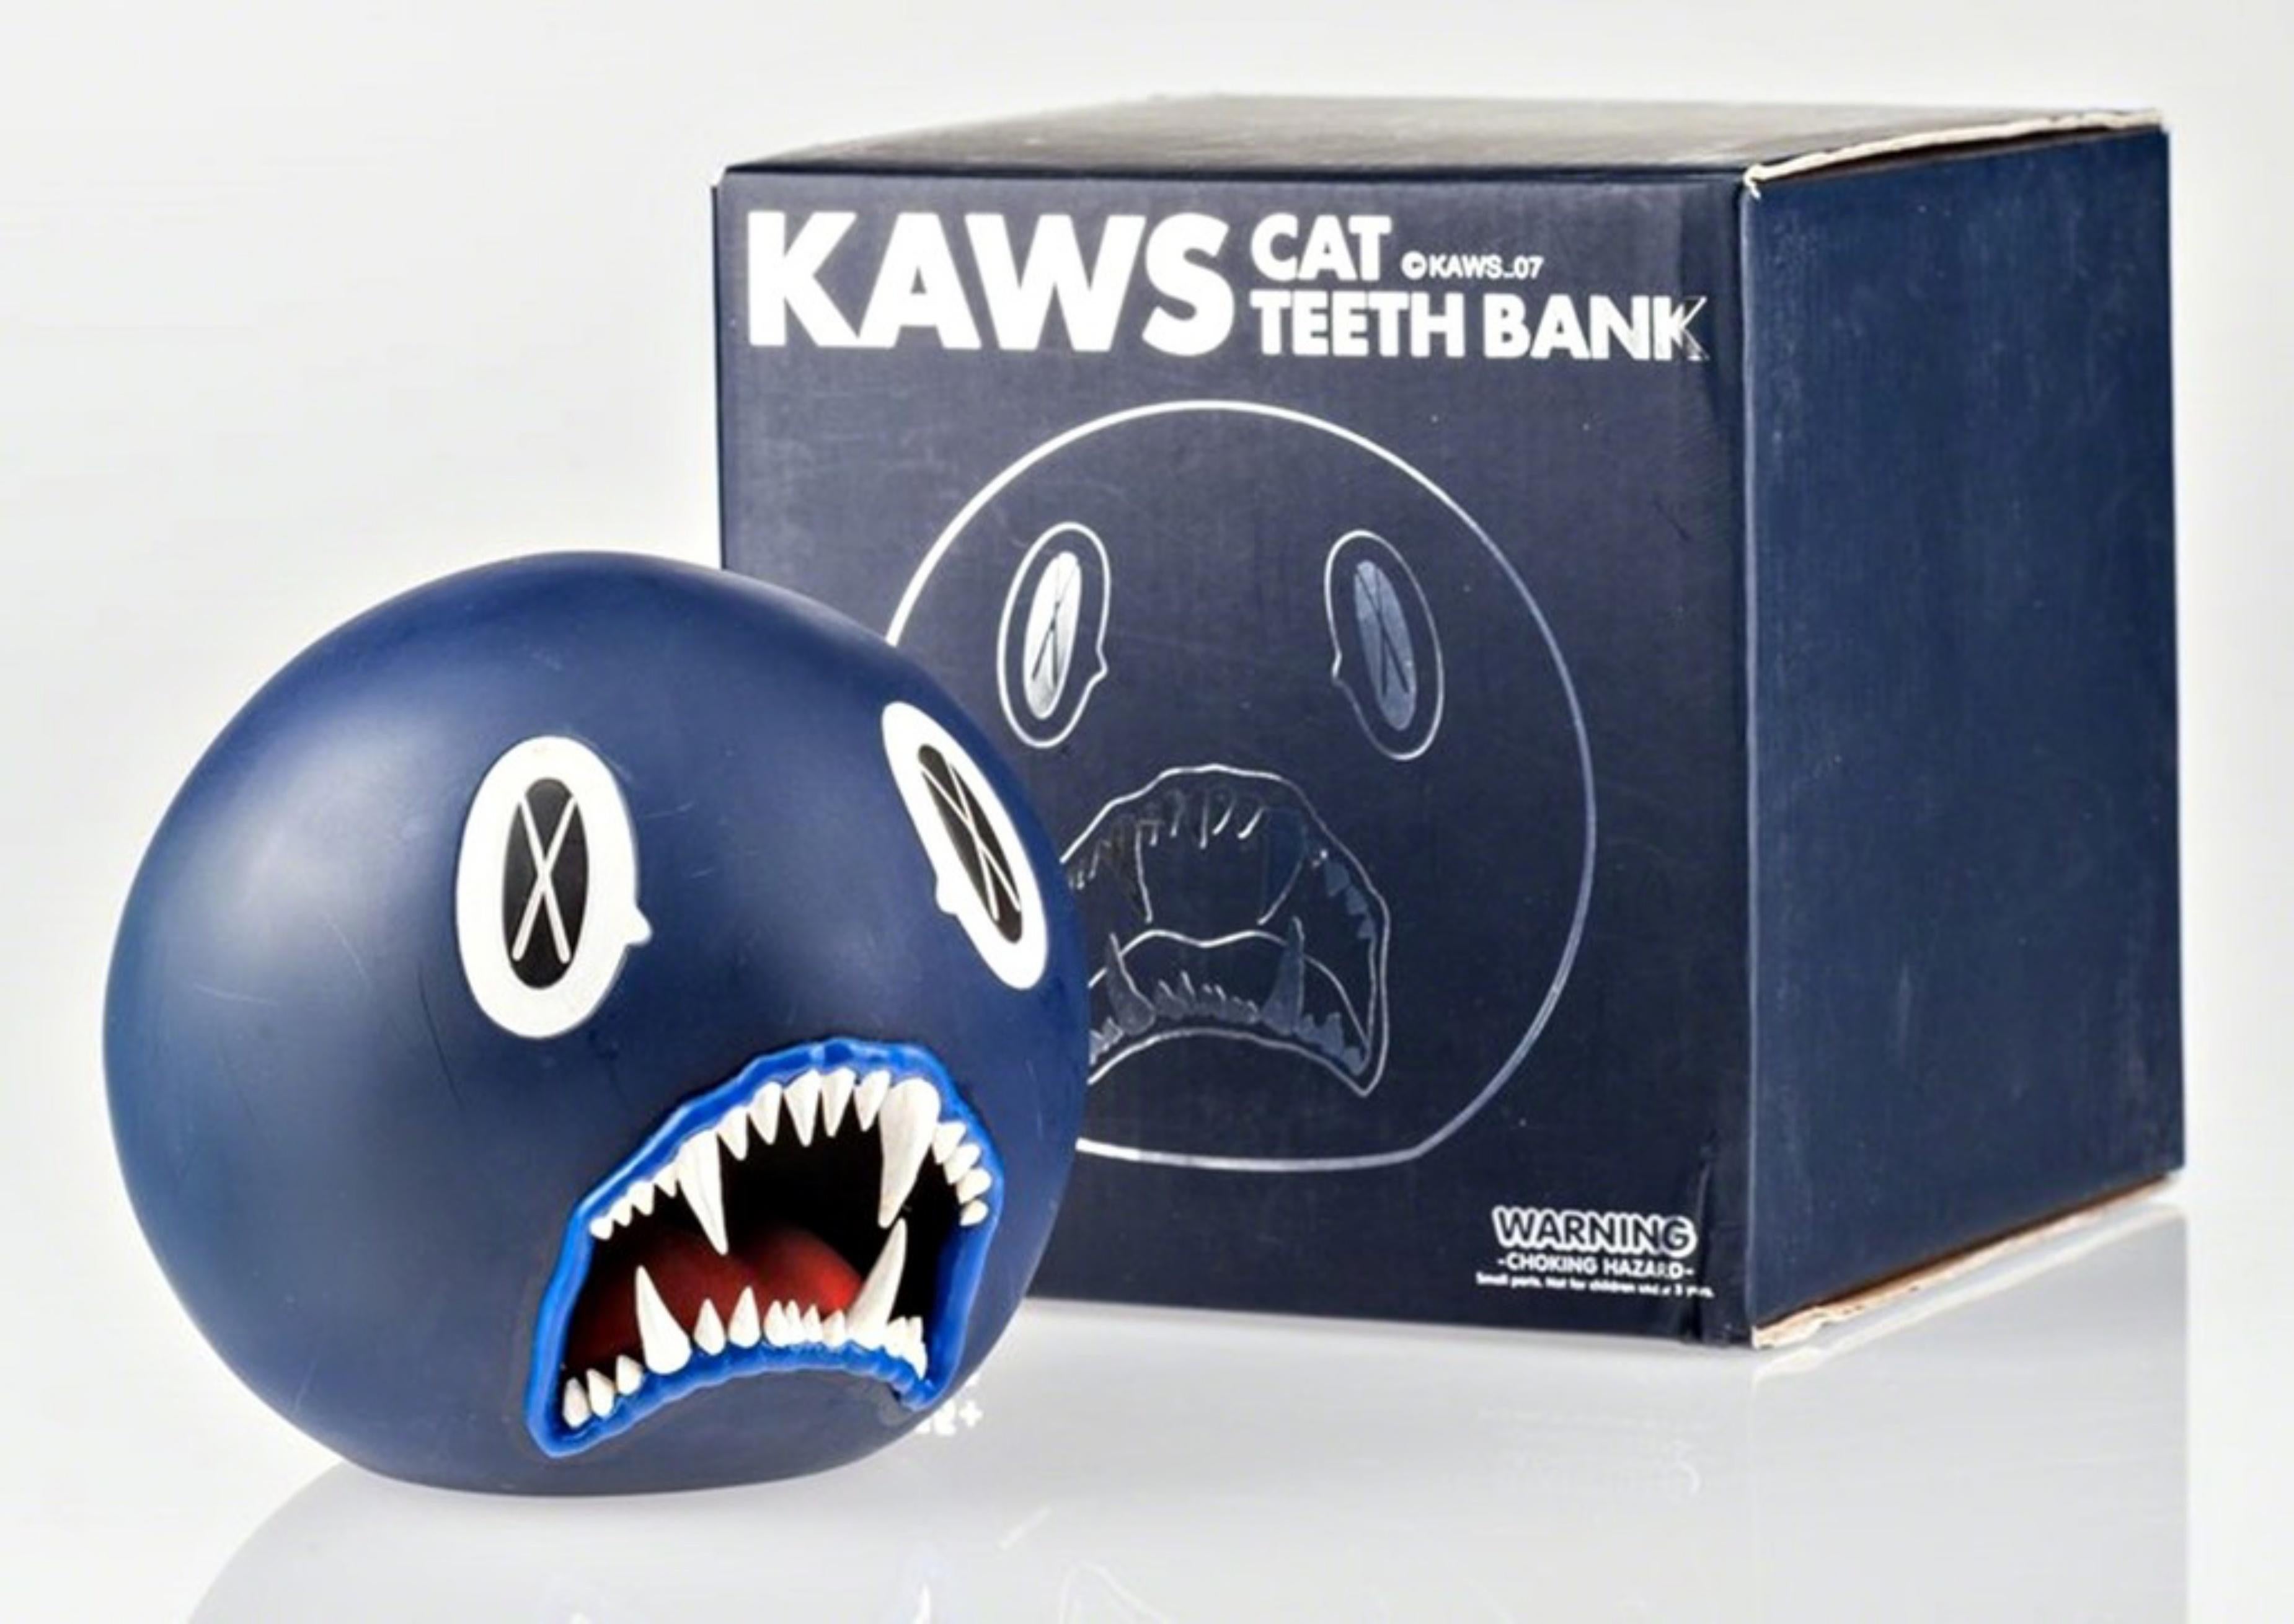 Cat Teeth Bank